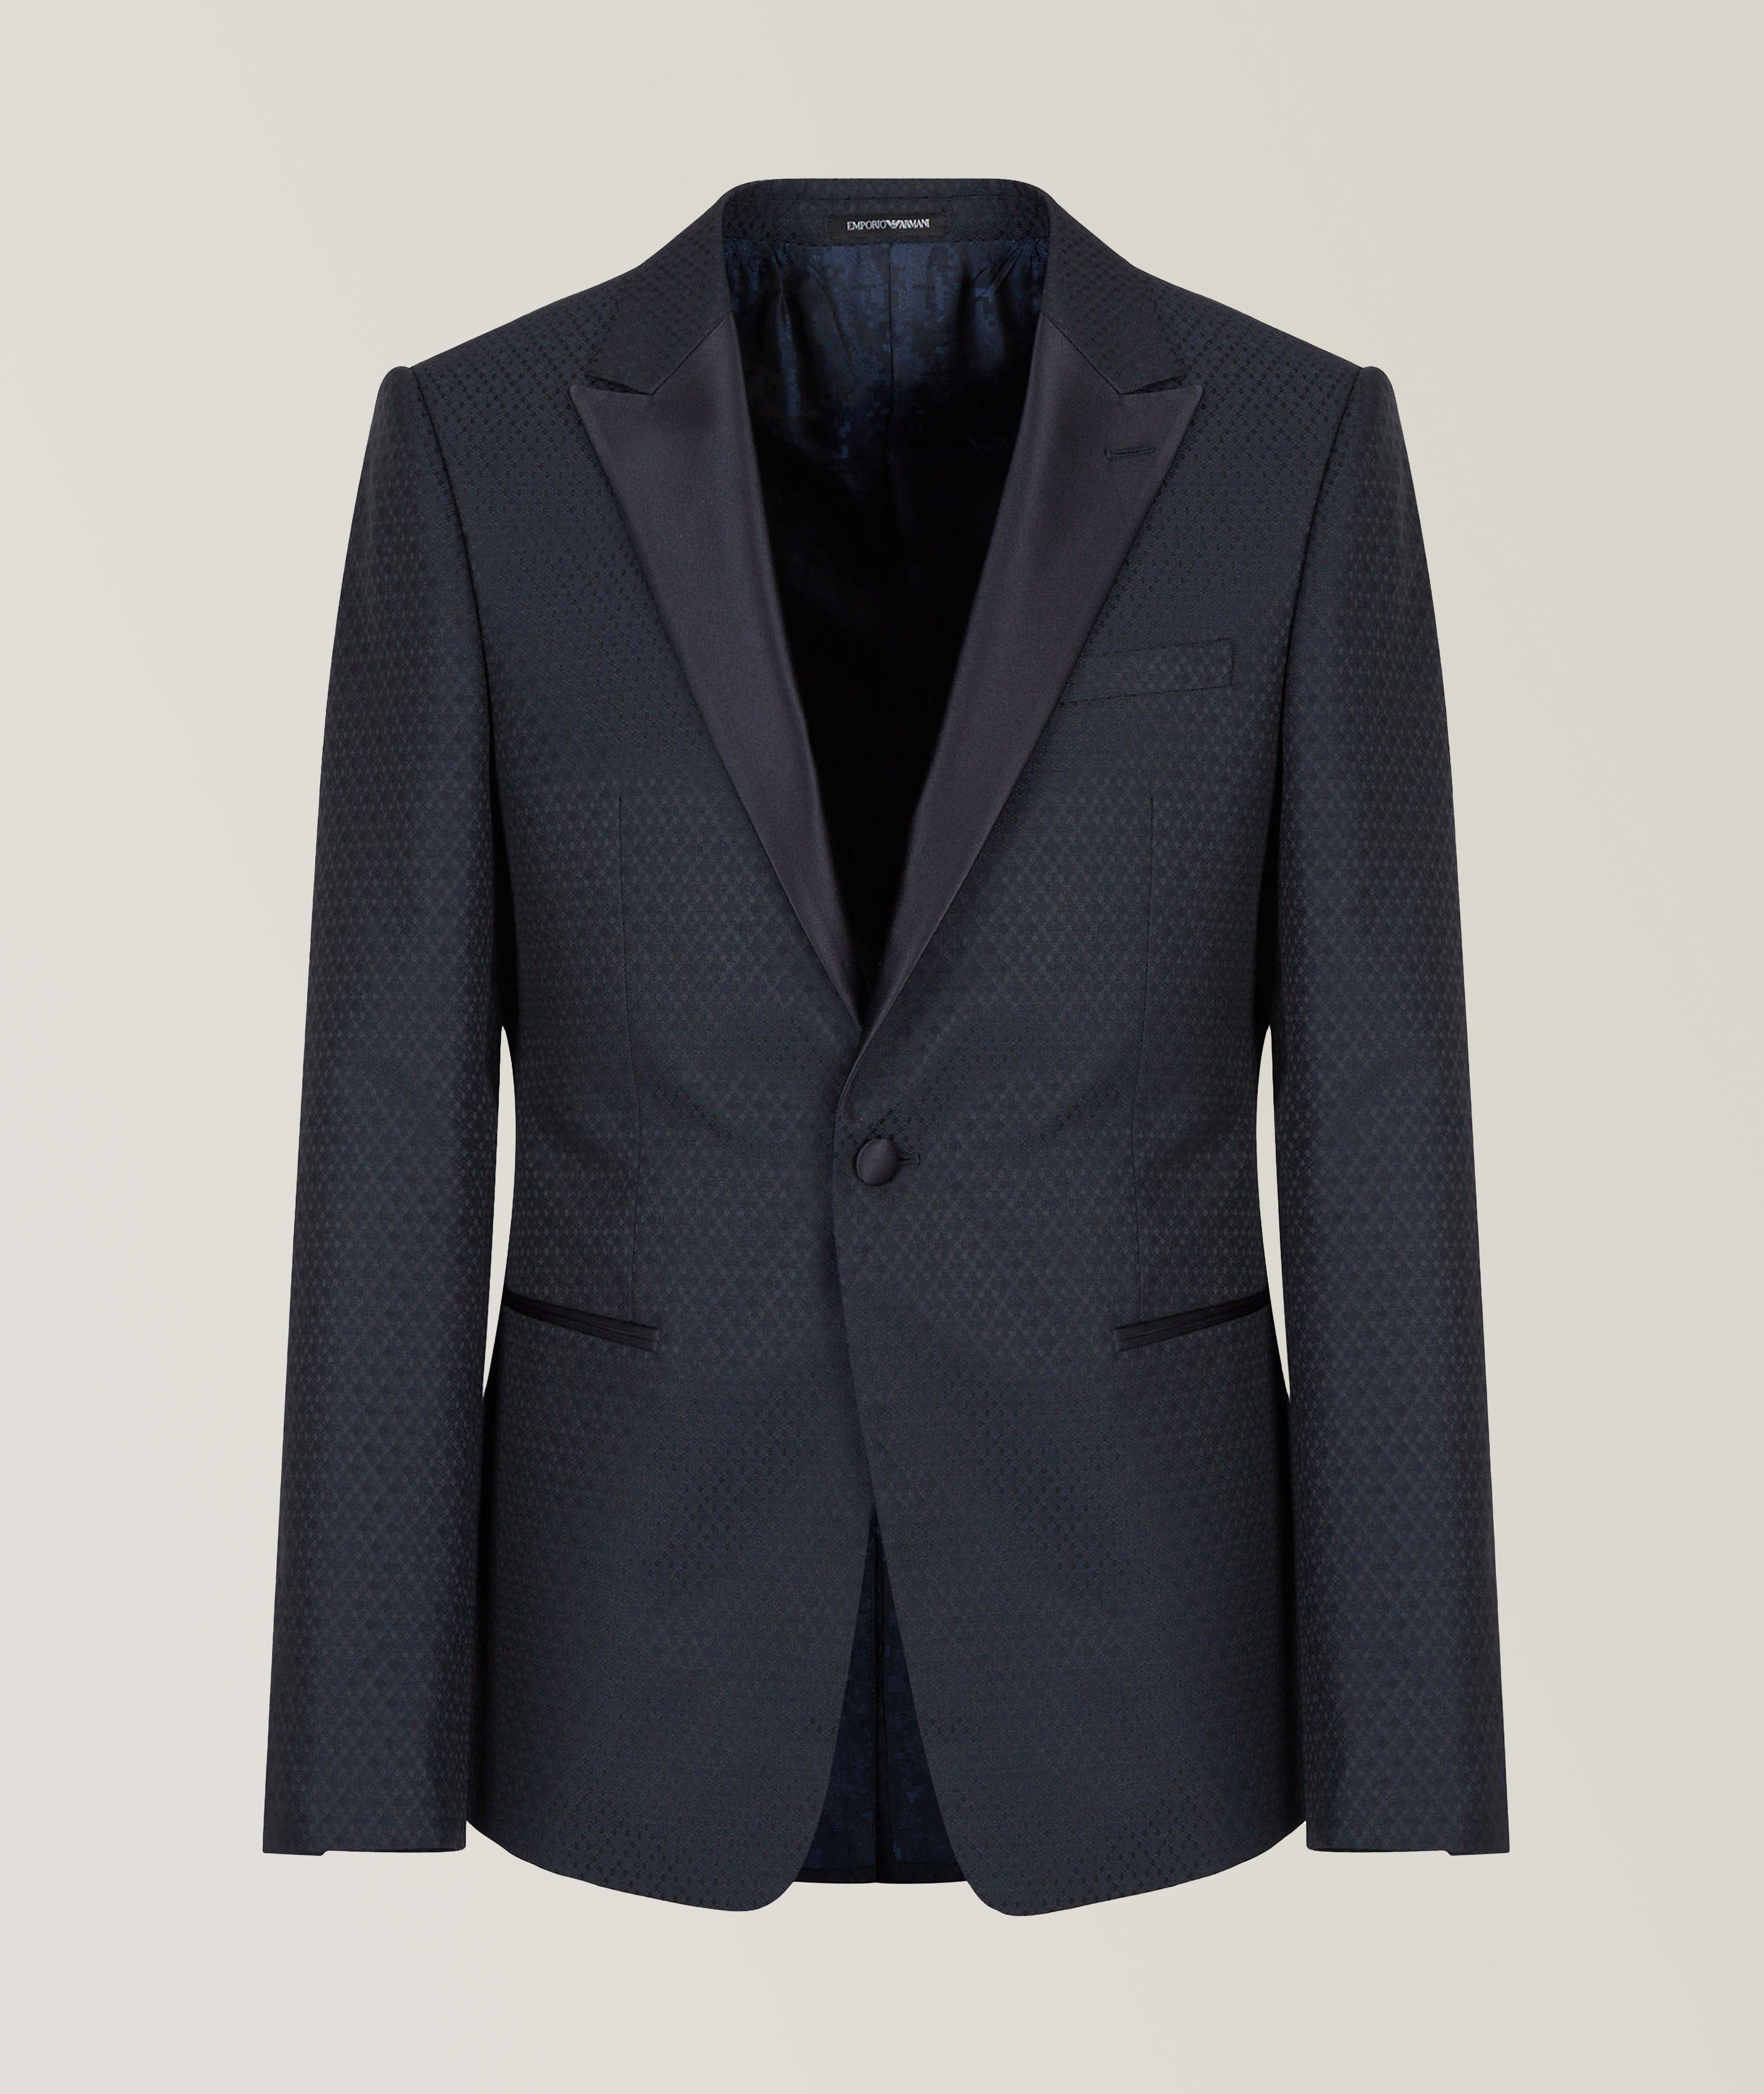 Jacquard Wool Blend Tuxedo Jacket image 0